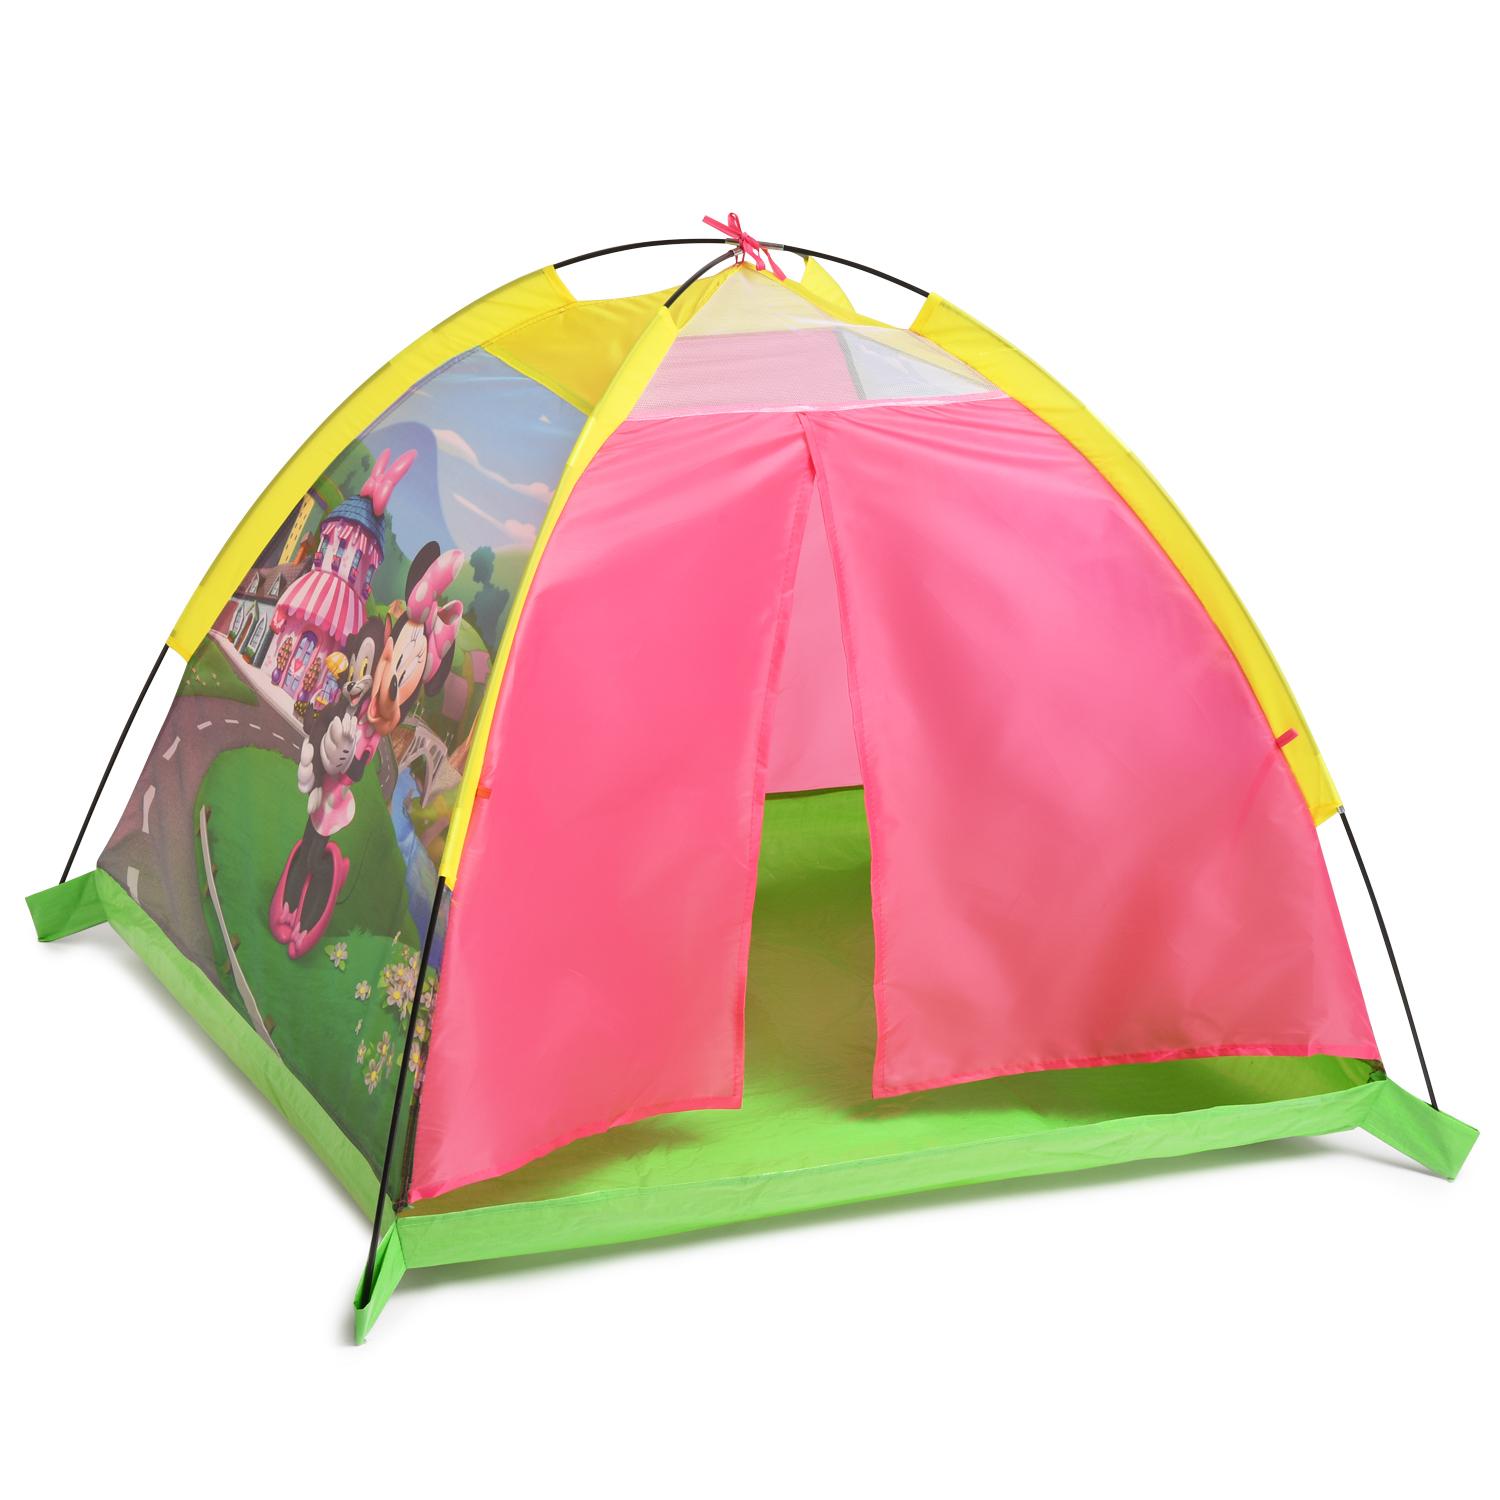 Игровая палатка – Минни Маус  